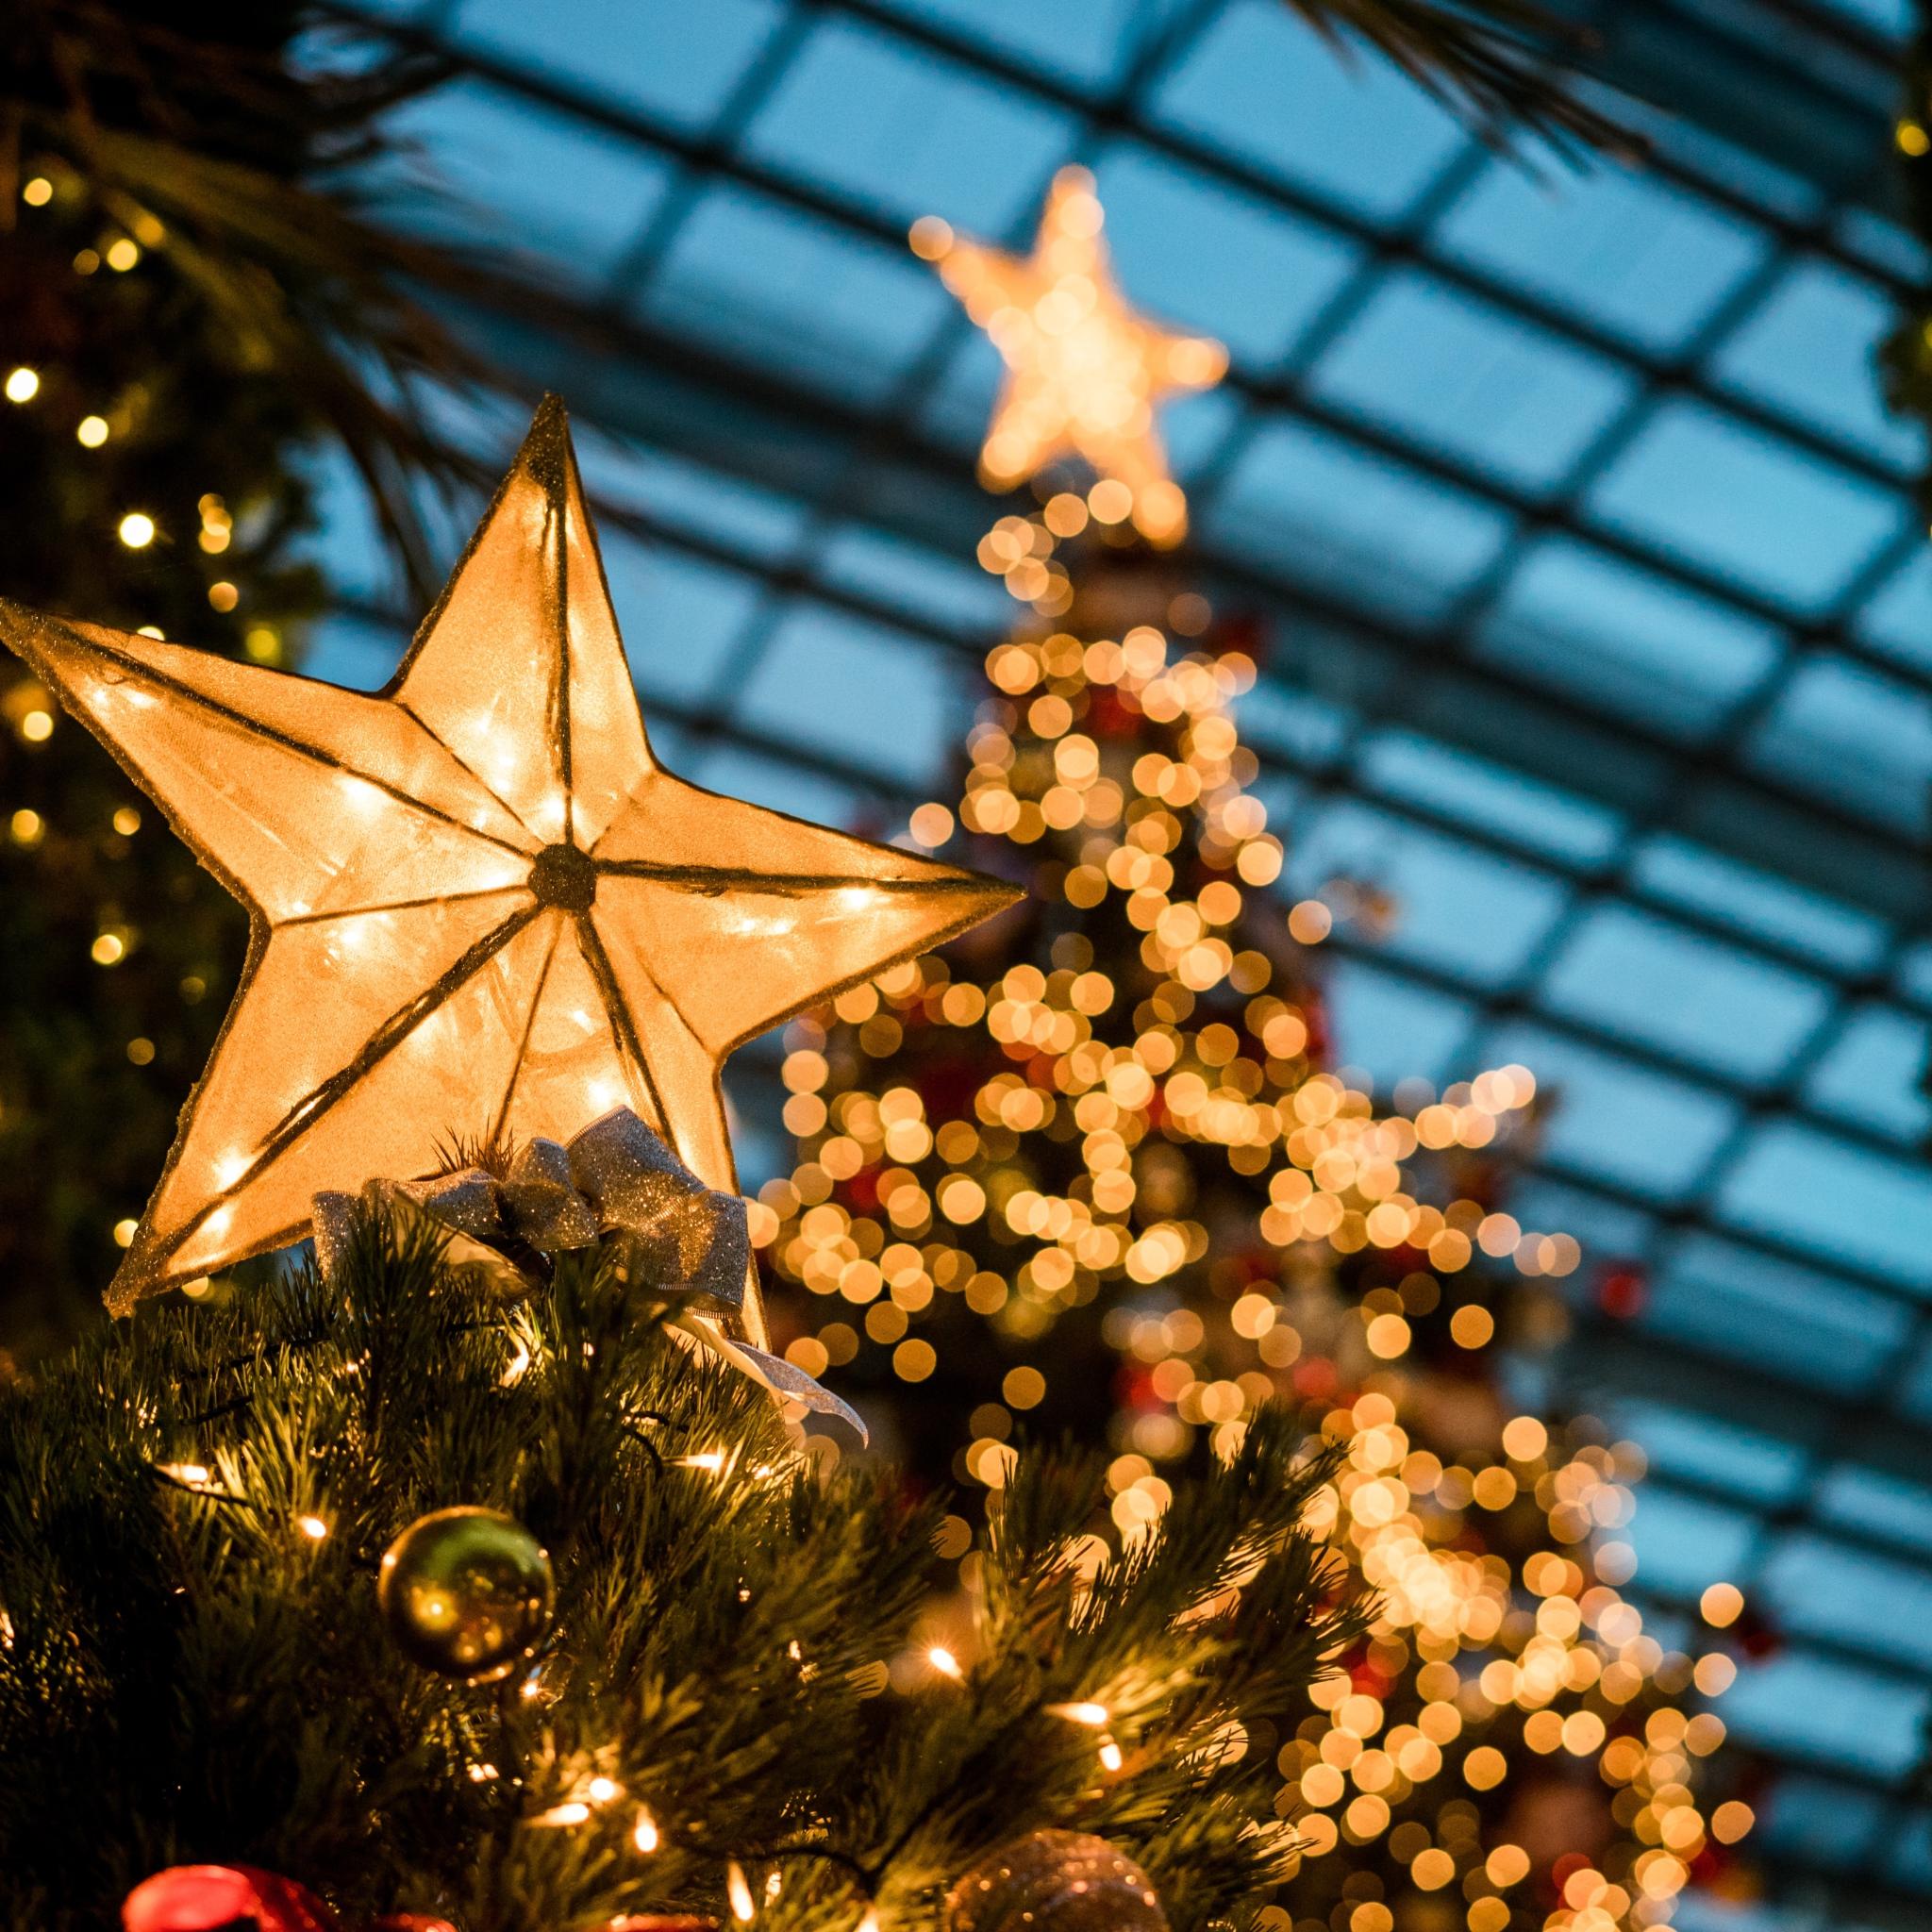 Man sieht im Hintergrund beleuchtete Weihnachtsbäume - im Vordergrund leuchtet ein Stern auf einem Tannenbaum